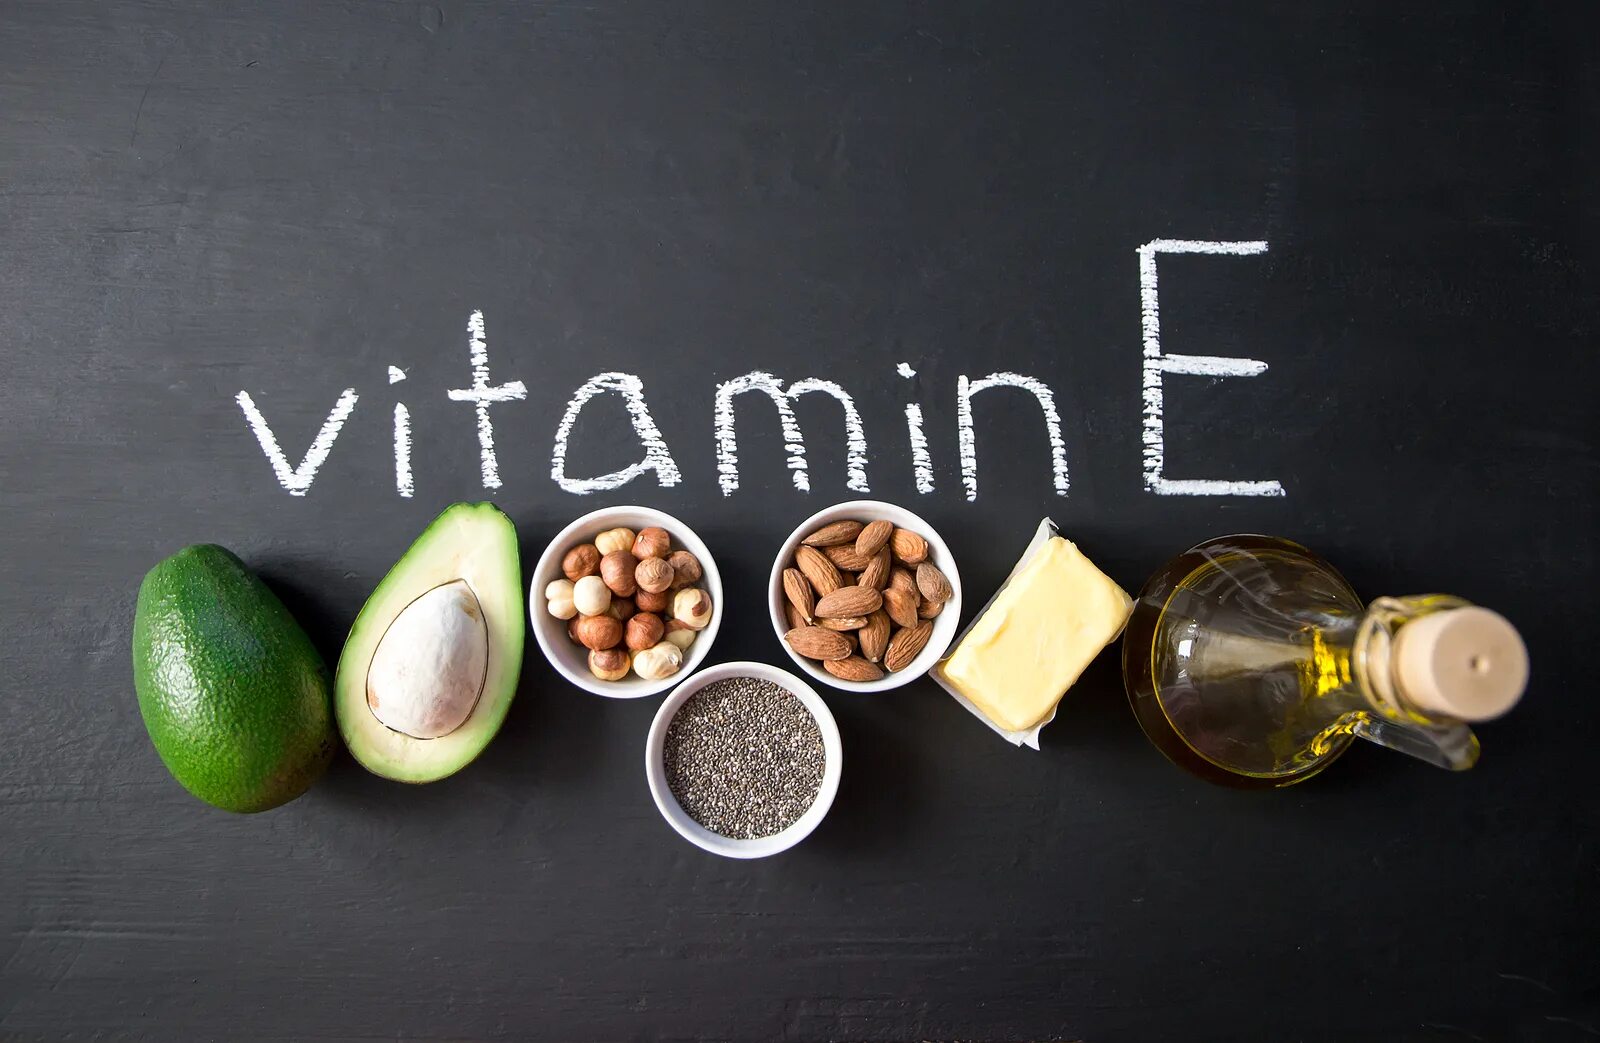 Vitamin d vitamin e. Что такое витамины. Витамин e. Витамин д Минимализм. Витамины а + е.